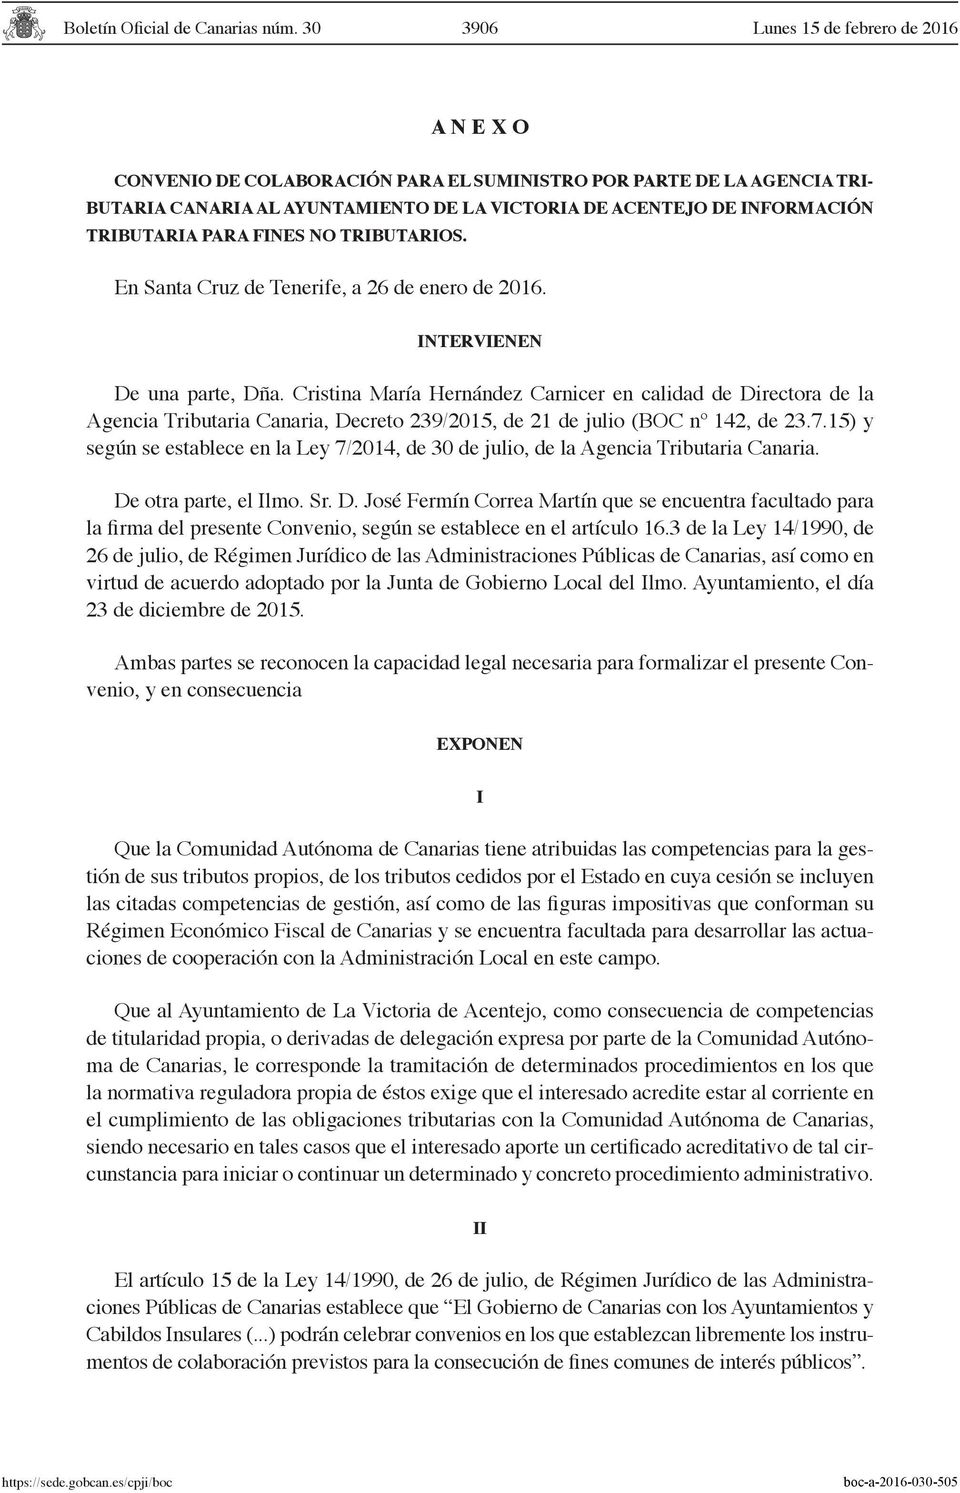 Cristina María Hernández Carnicer en calidad de Directora de la Agencia Tributaria Canaria, Decreto 239/2015, de 21 de julio (BOC nº 142, de 23.7.